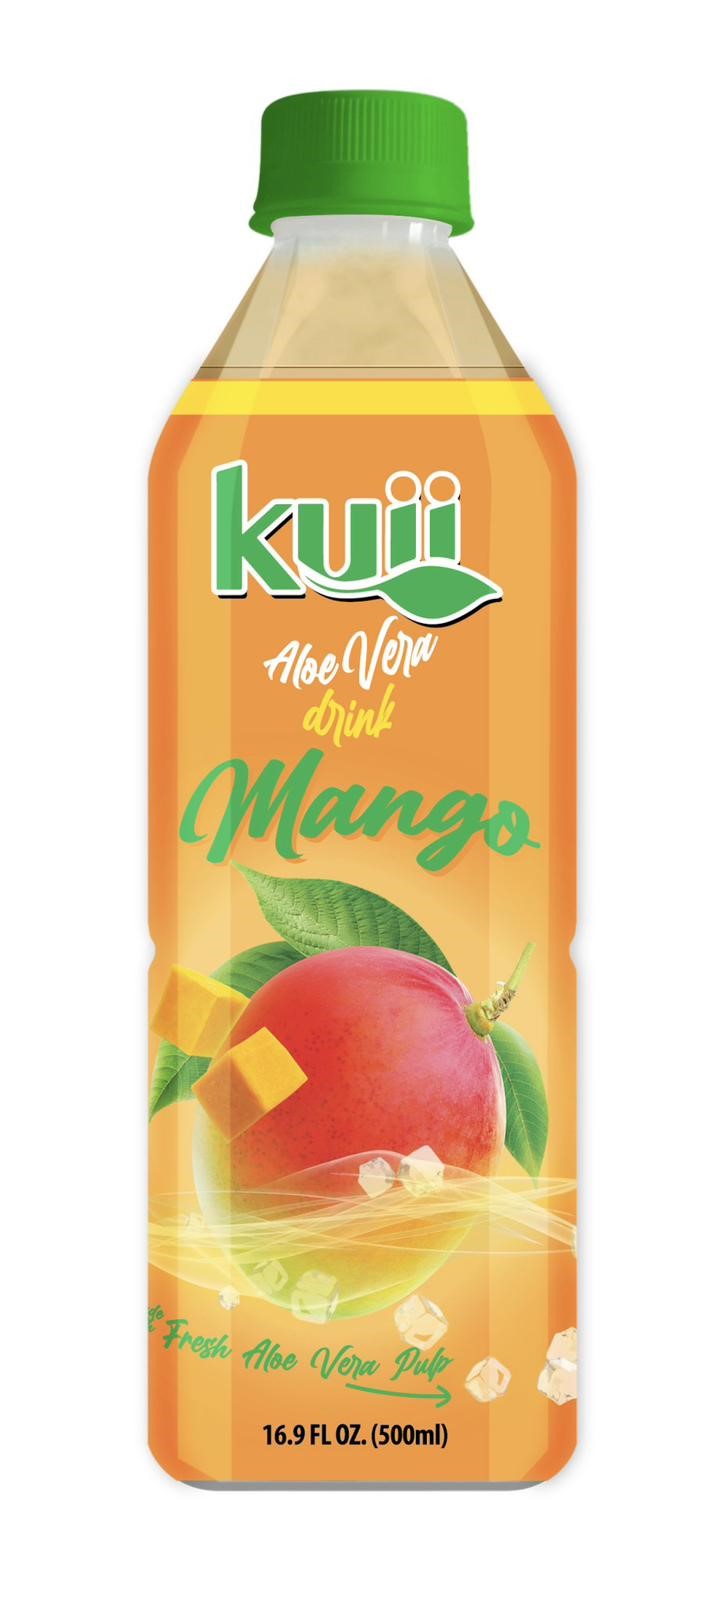 Kuii mango aloe 12ct 16.4oz